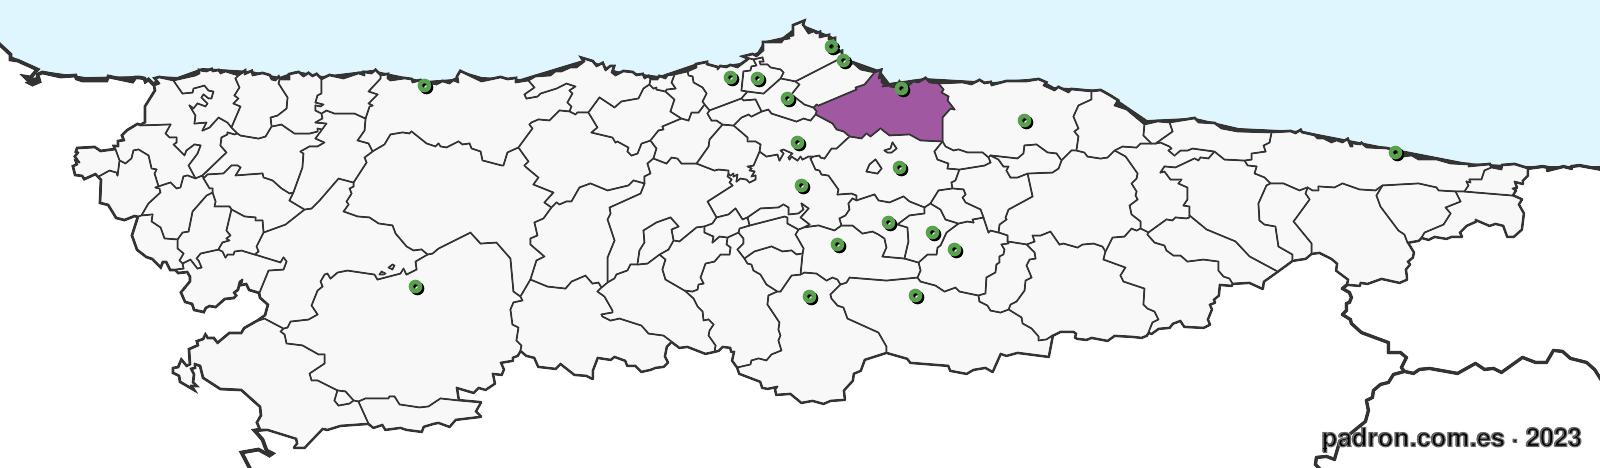 kuwaitíes en asturias.